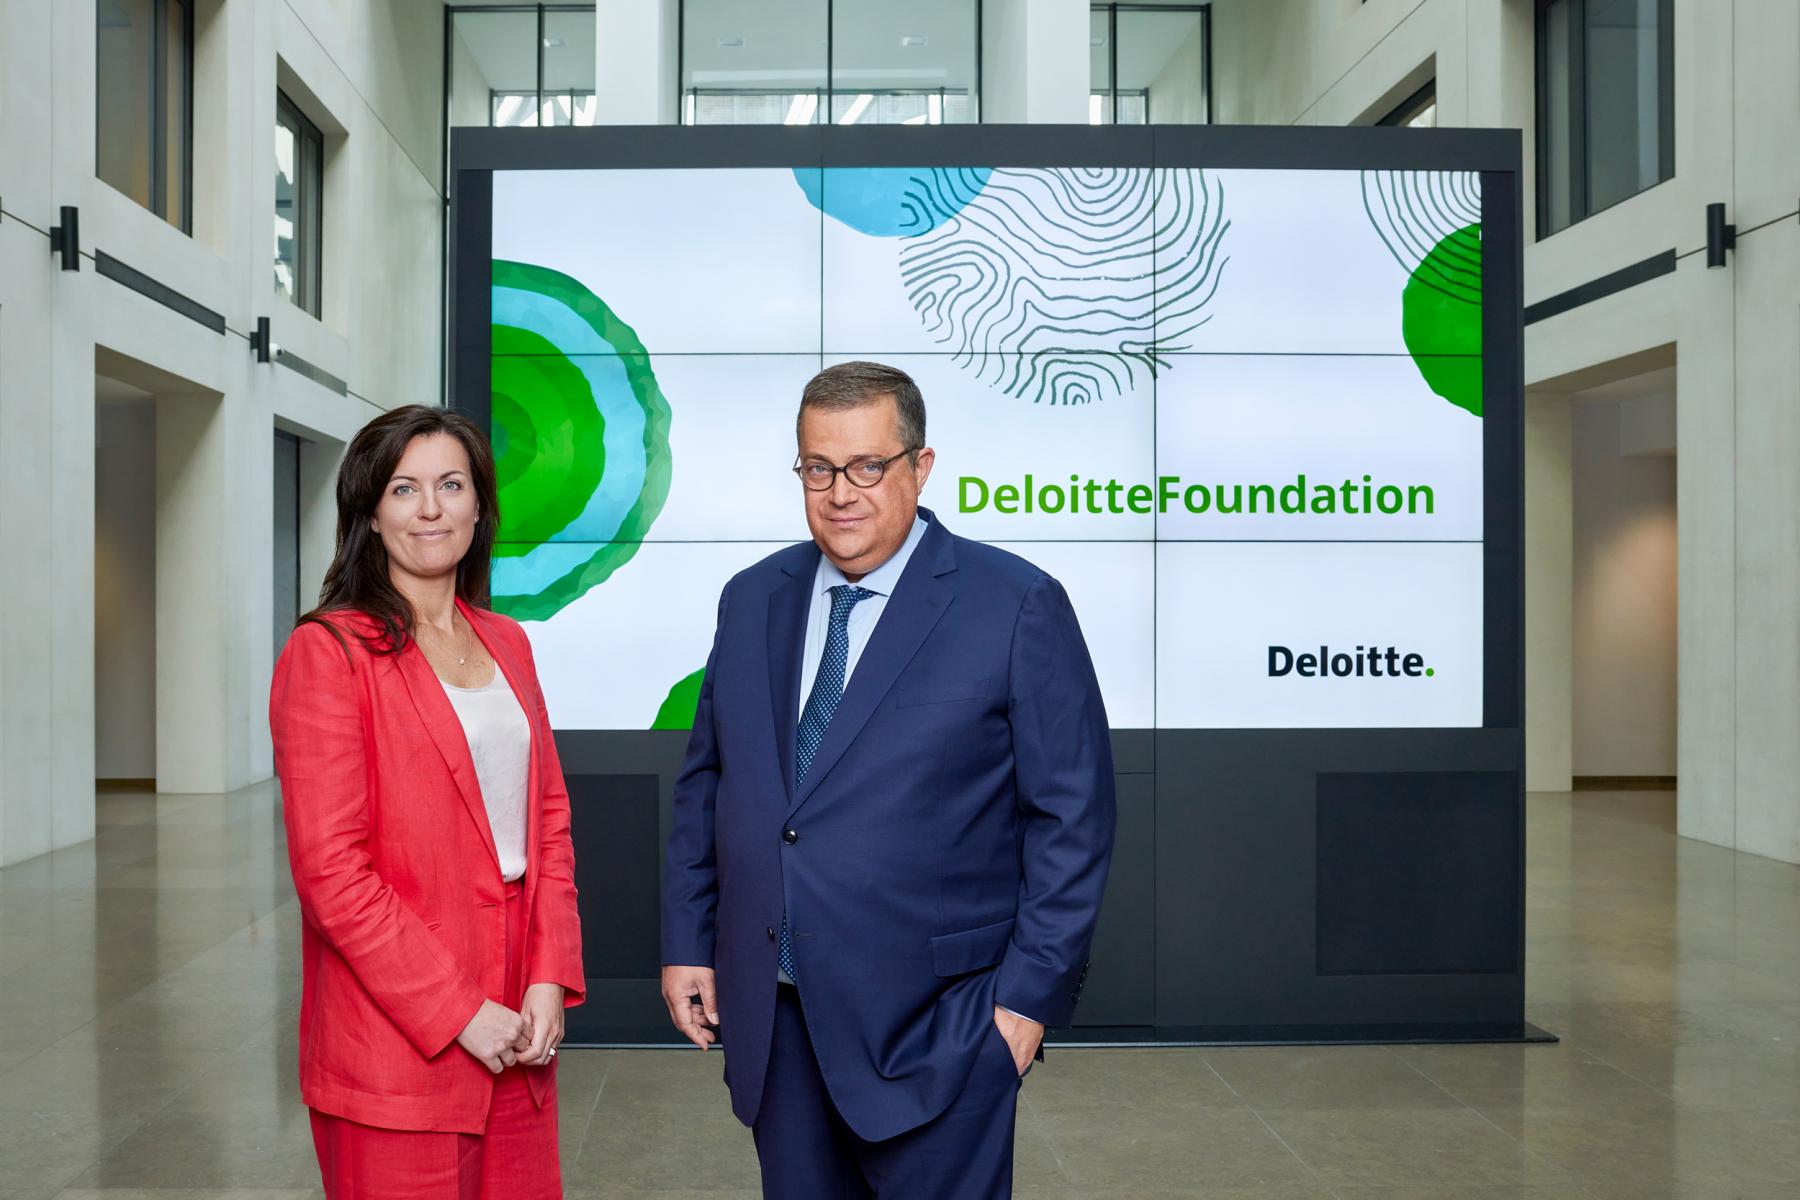 Deloitte Foundation par Eric DEVILLET Photographe Professionnel Portrait Corporate Politique Finance Luxembourg Belgique France